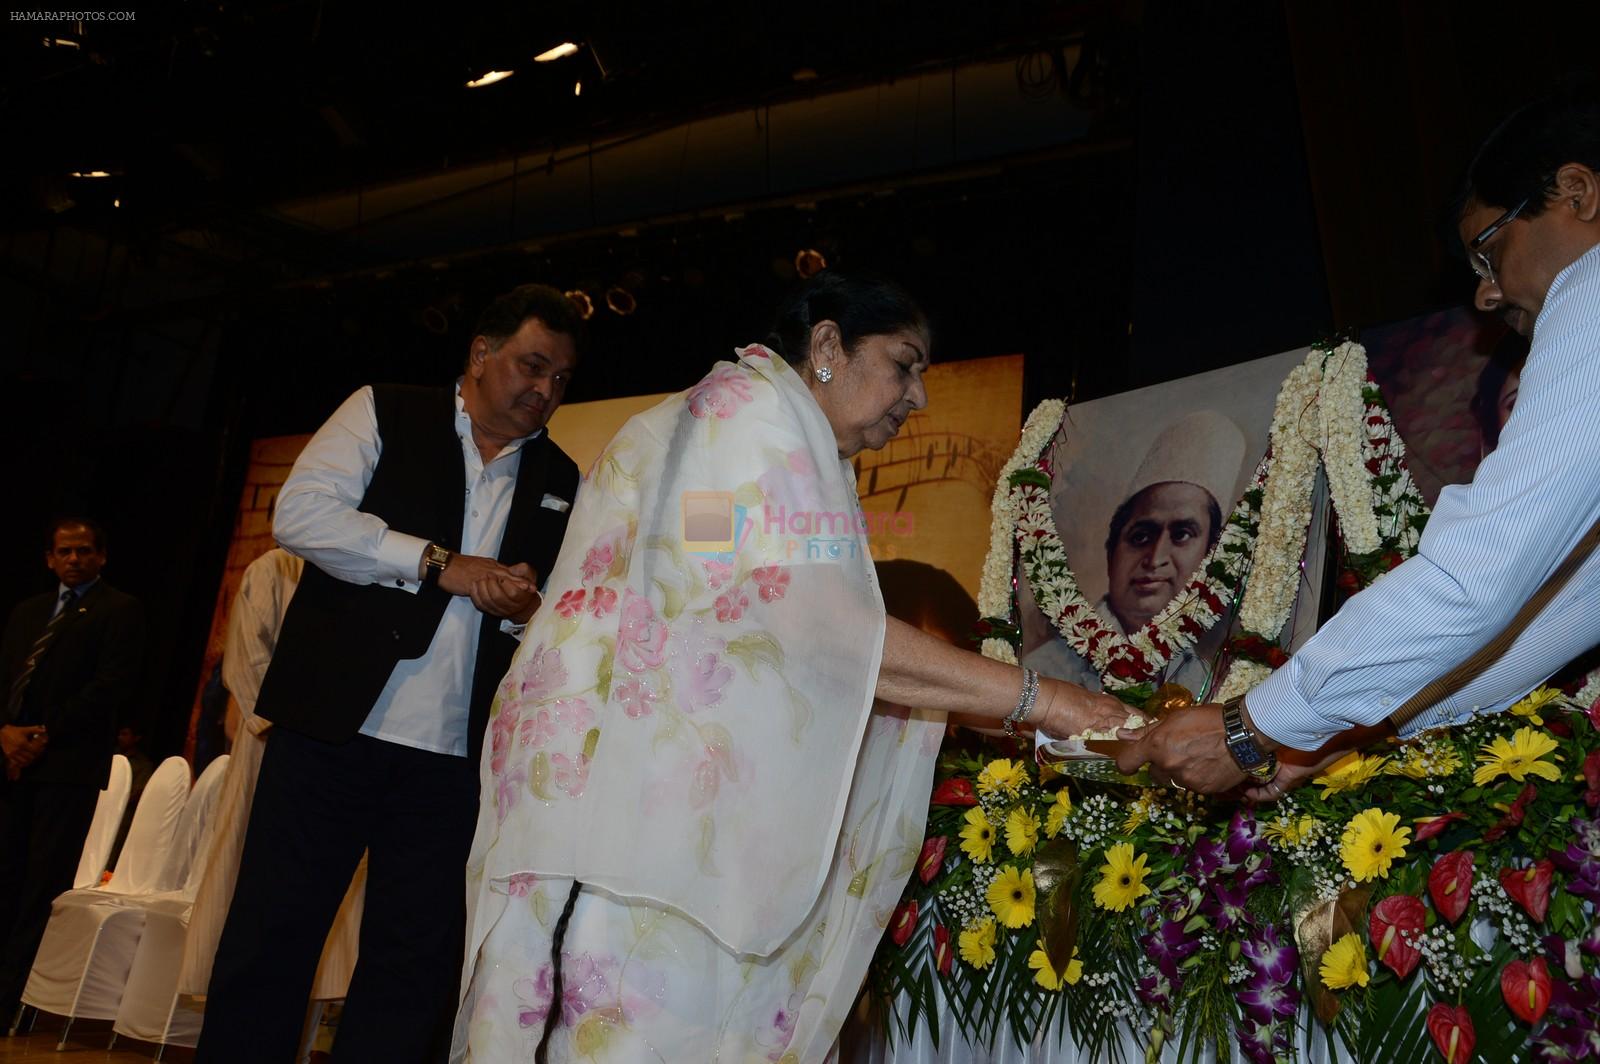 Rishi Kapoor, Lata Mangeshkar at Master Deenanath Mangeshkar awards in Mumbai on 24th April 2014